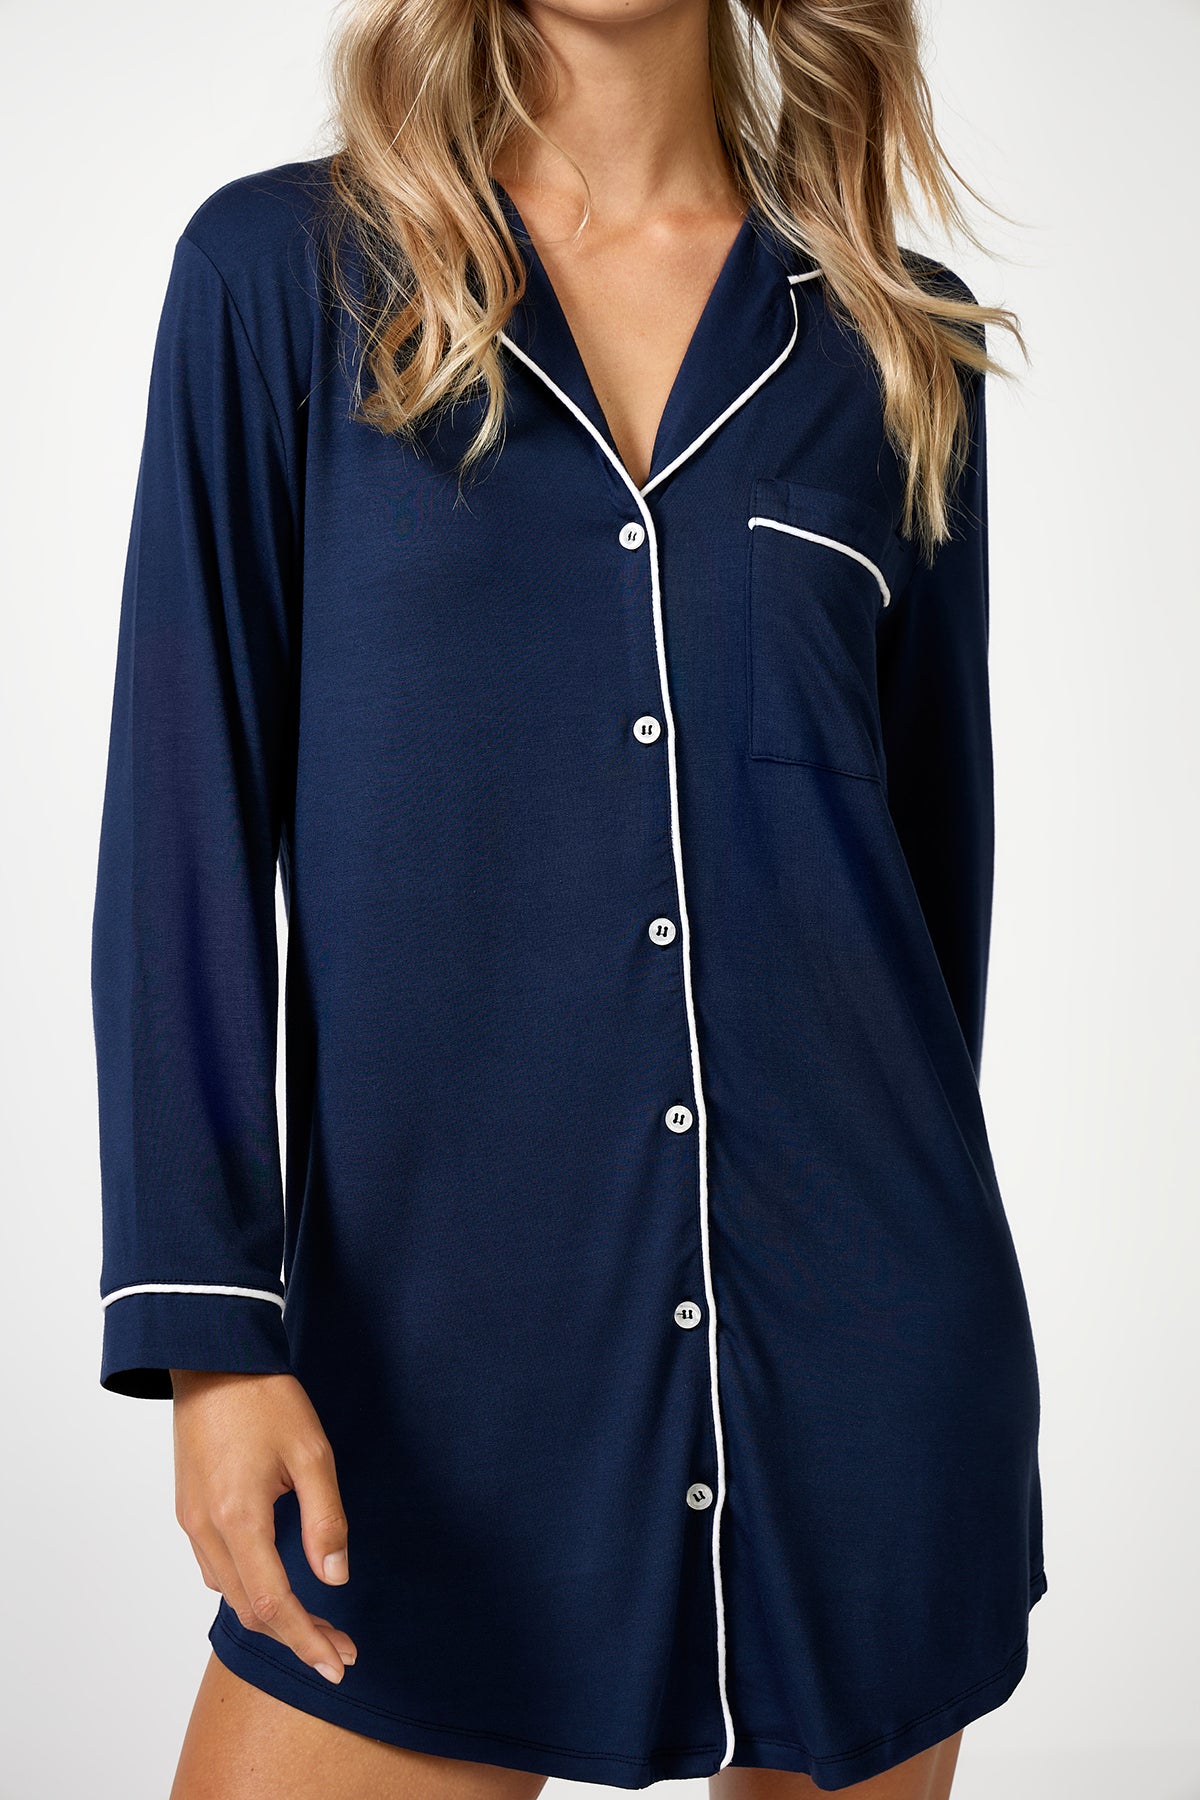 The Night Shirt Navy - Pyjamas - POCO by Pippa